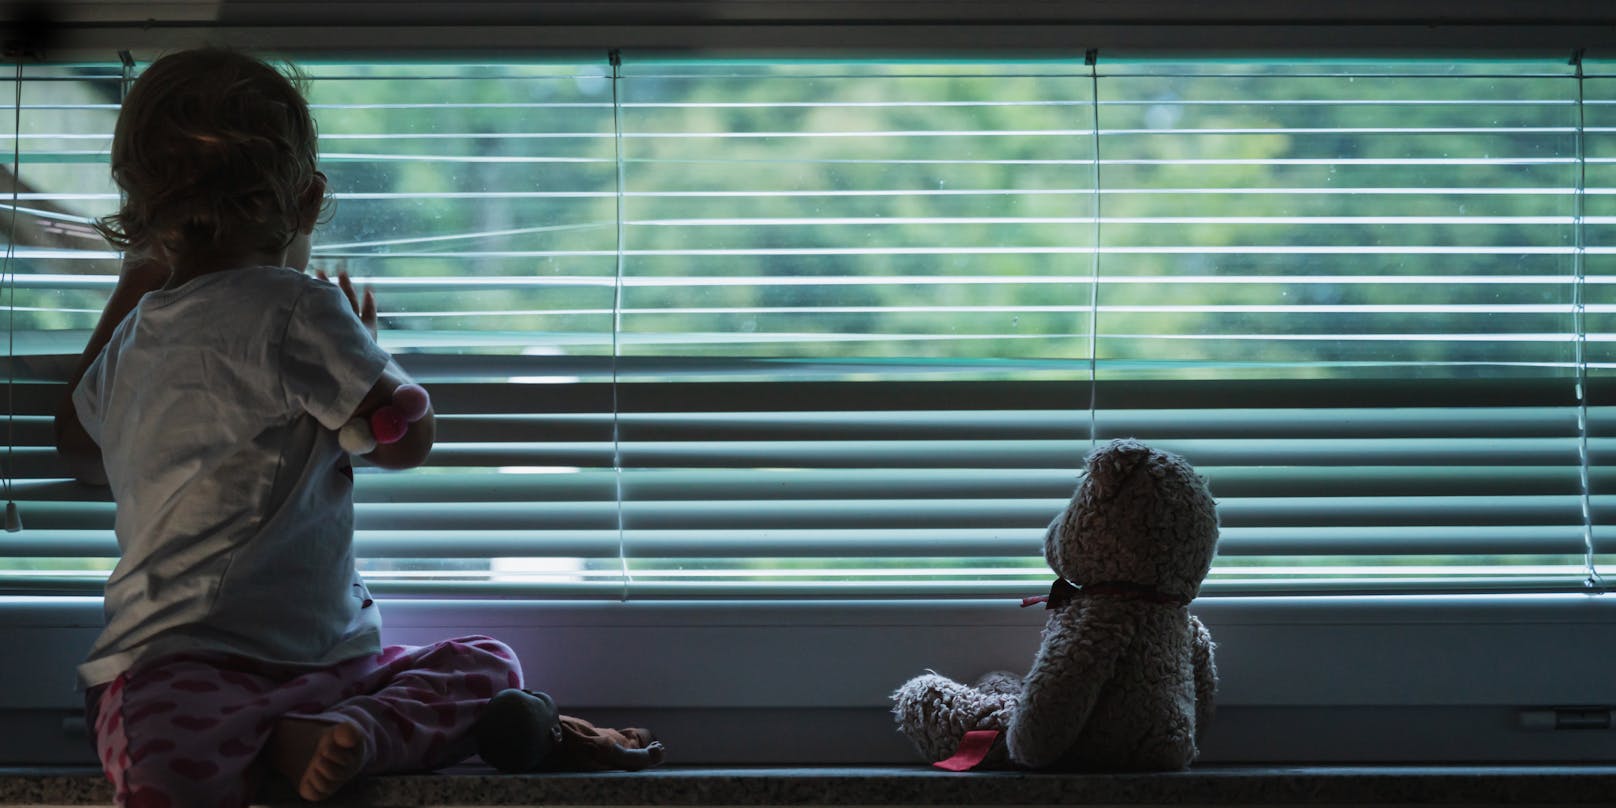 Ein kleines Mädchen schaut traurig aus dem Fenster. Symbolbild